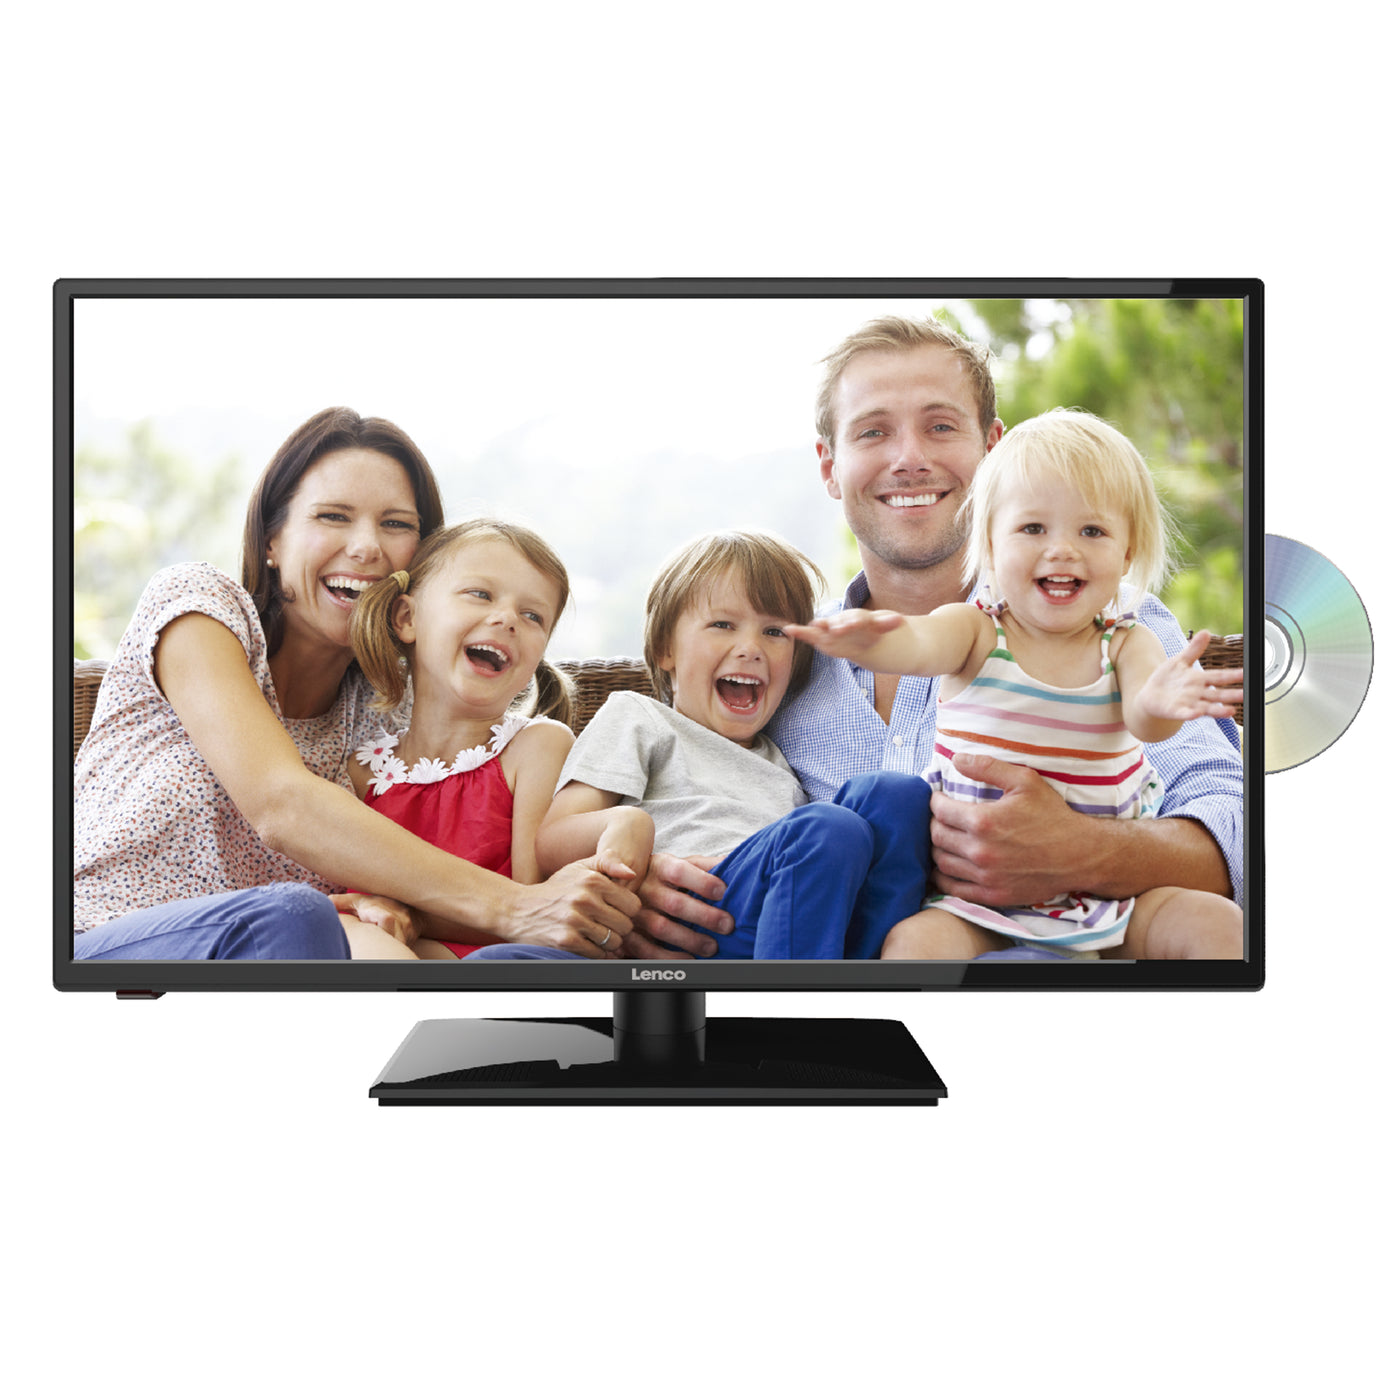 Lenco DVL-320BK - TV 32 Inch avec DVD